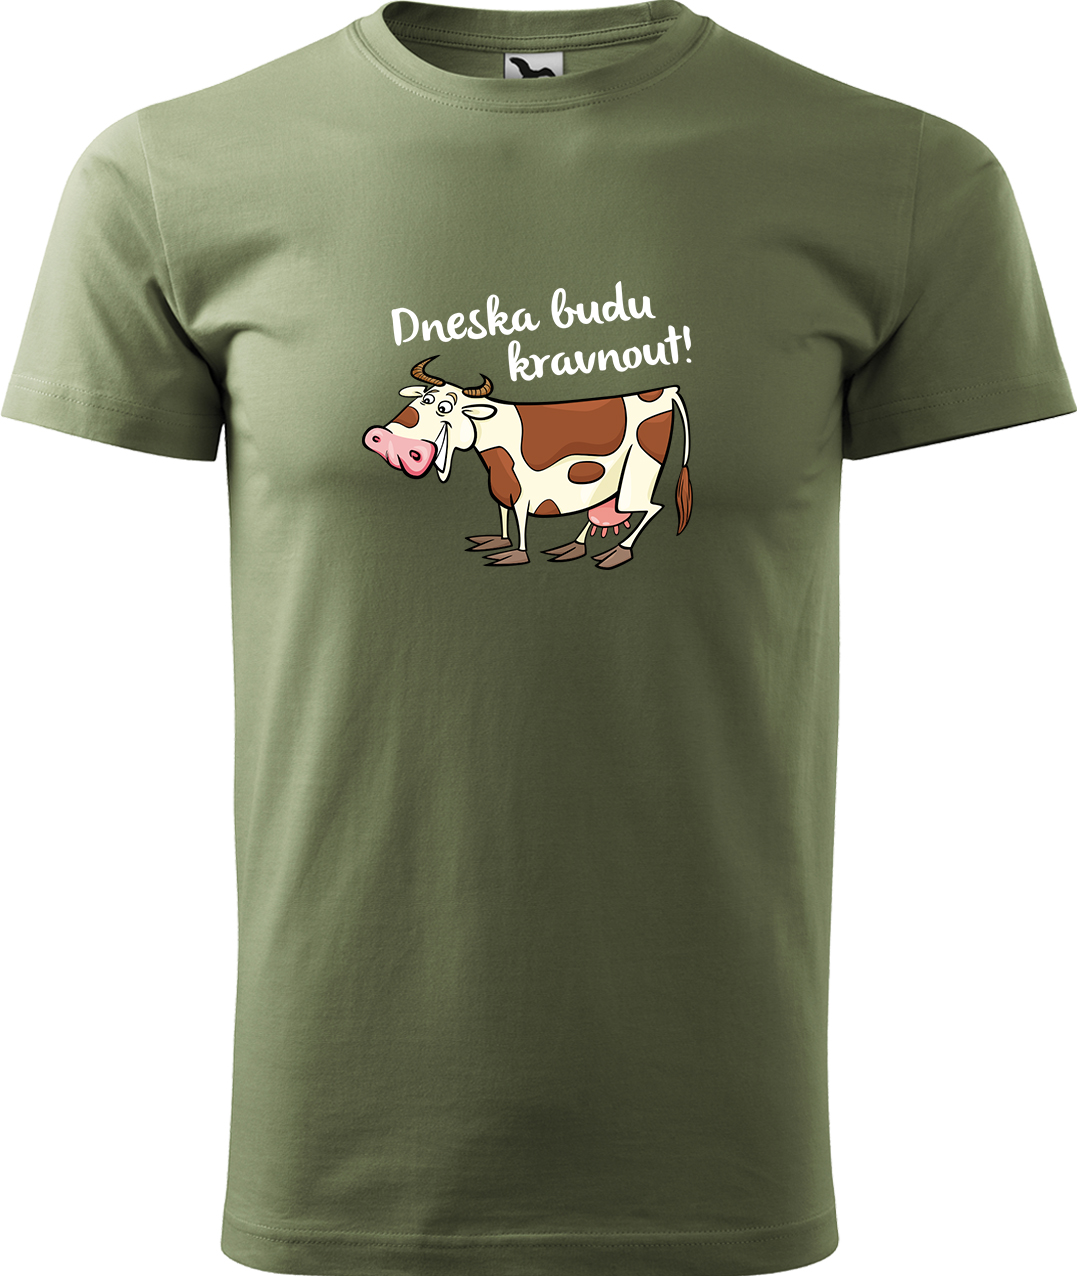 Pánské tričko s krávou - Dneska budu kravnout! Velikost: S, Barva: Světlá khaki (28), Střih: pánský